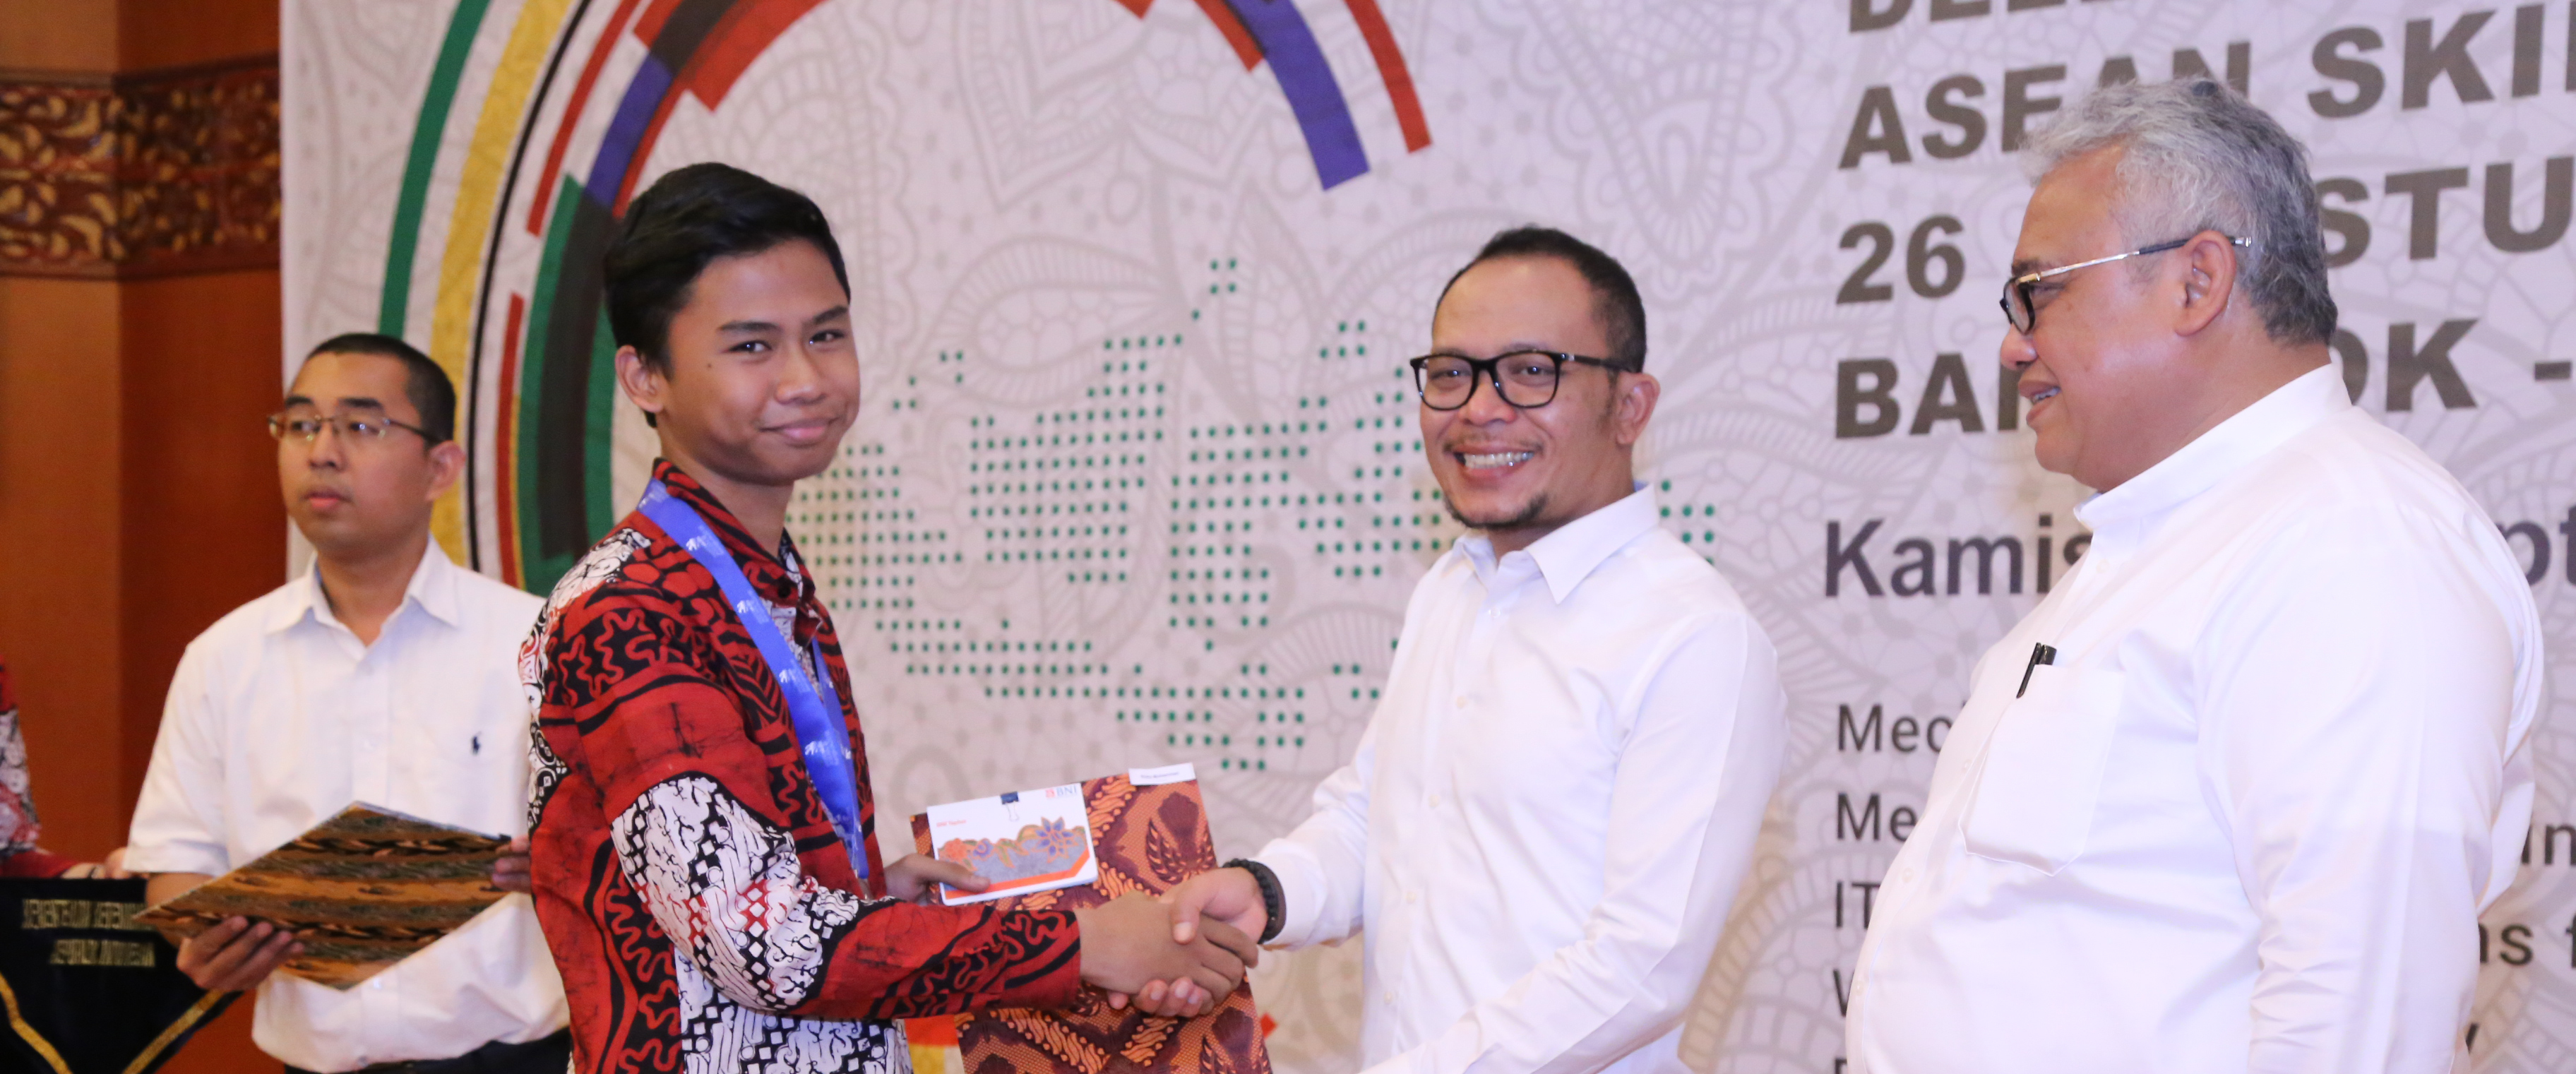 Juara ASEAN Skills petition 2018